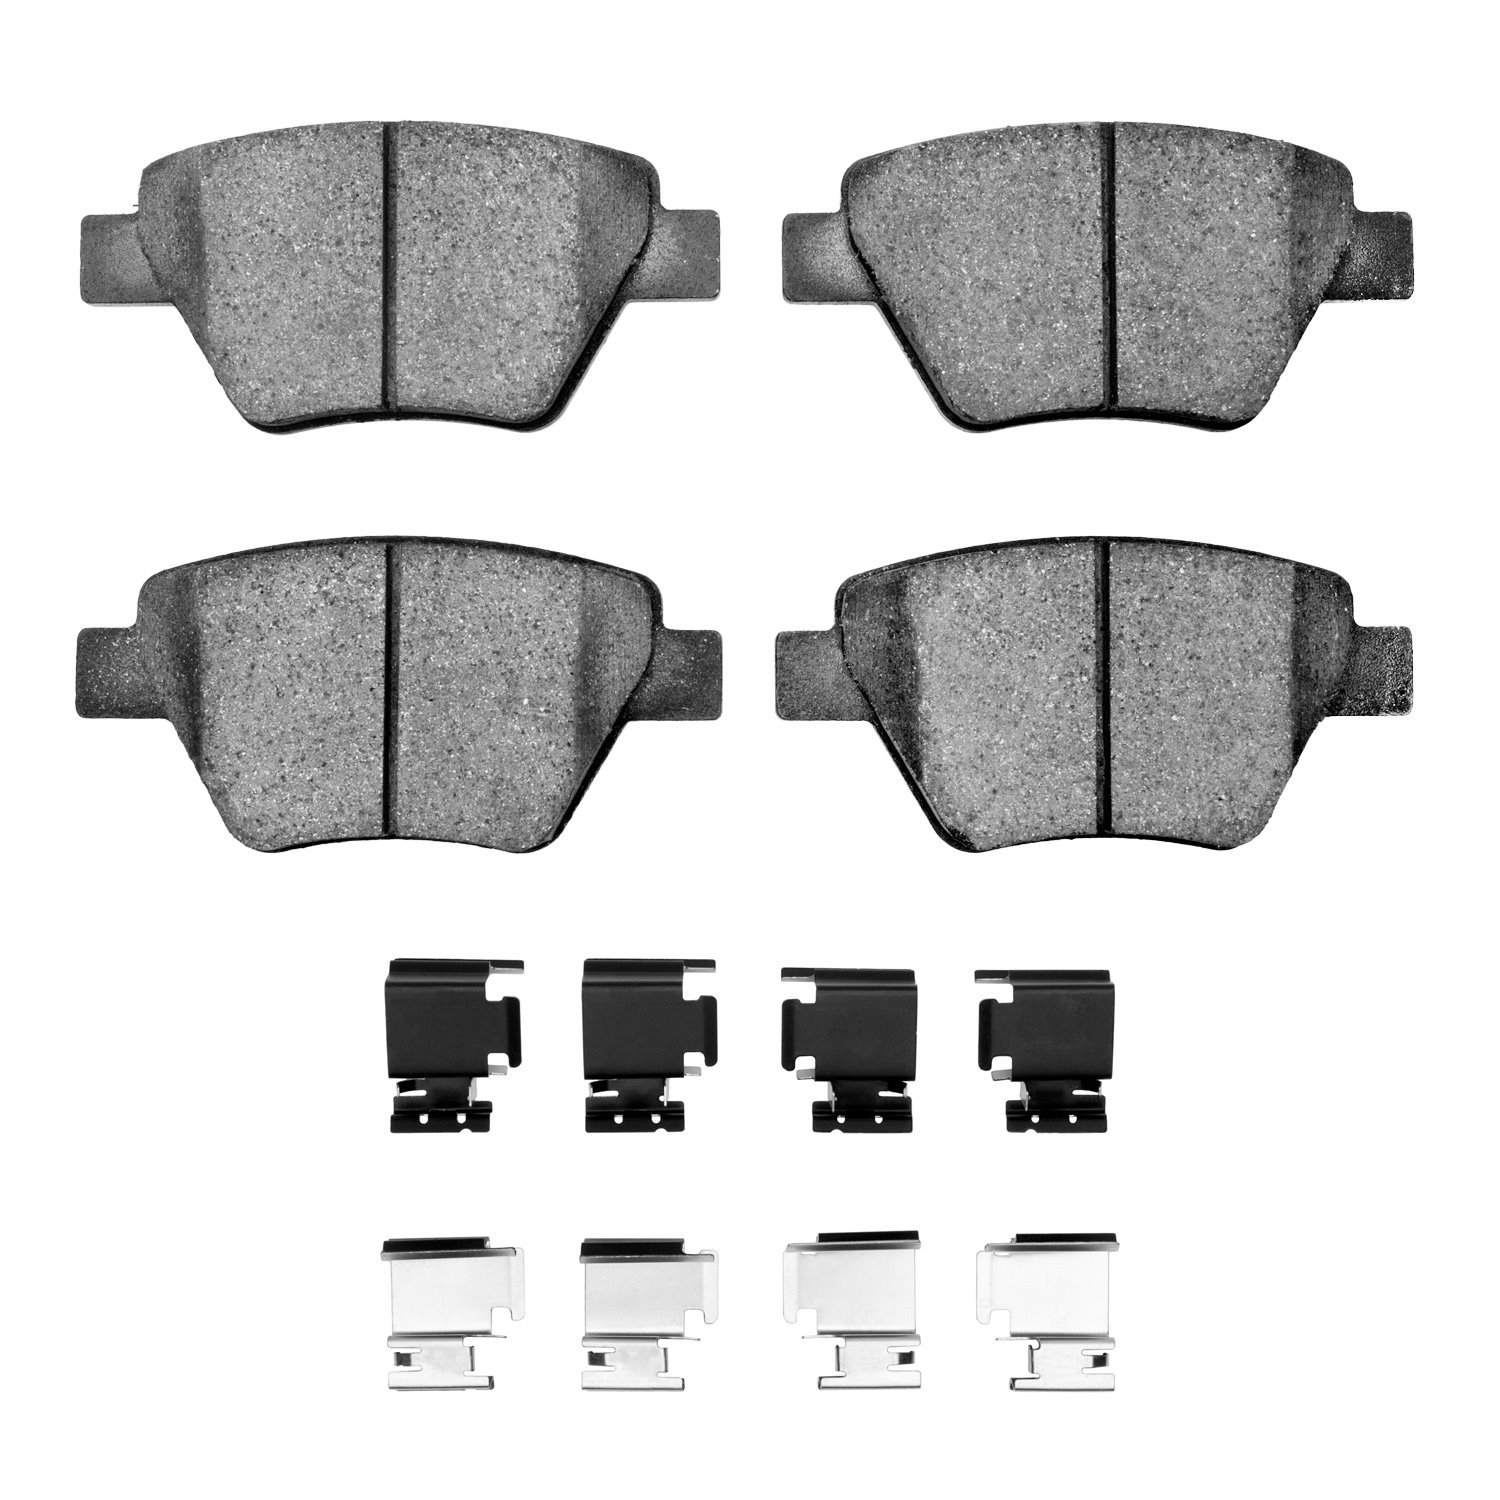 1311-1456-01 3000-Series Semi-Metallic Brake Pads & Hardware Kit, 2005-2016 Audi/Volkswagen, Position: Rear